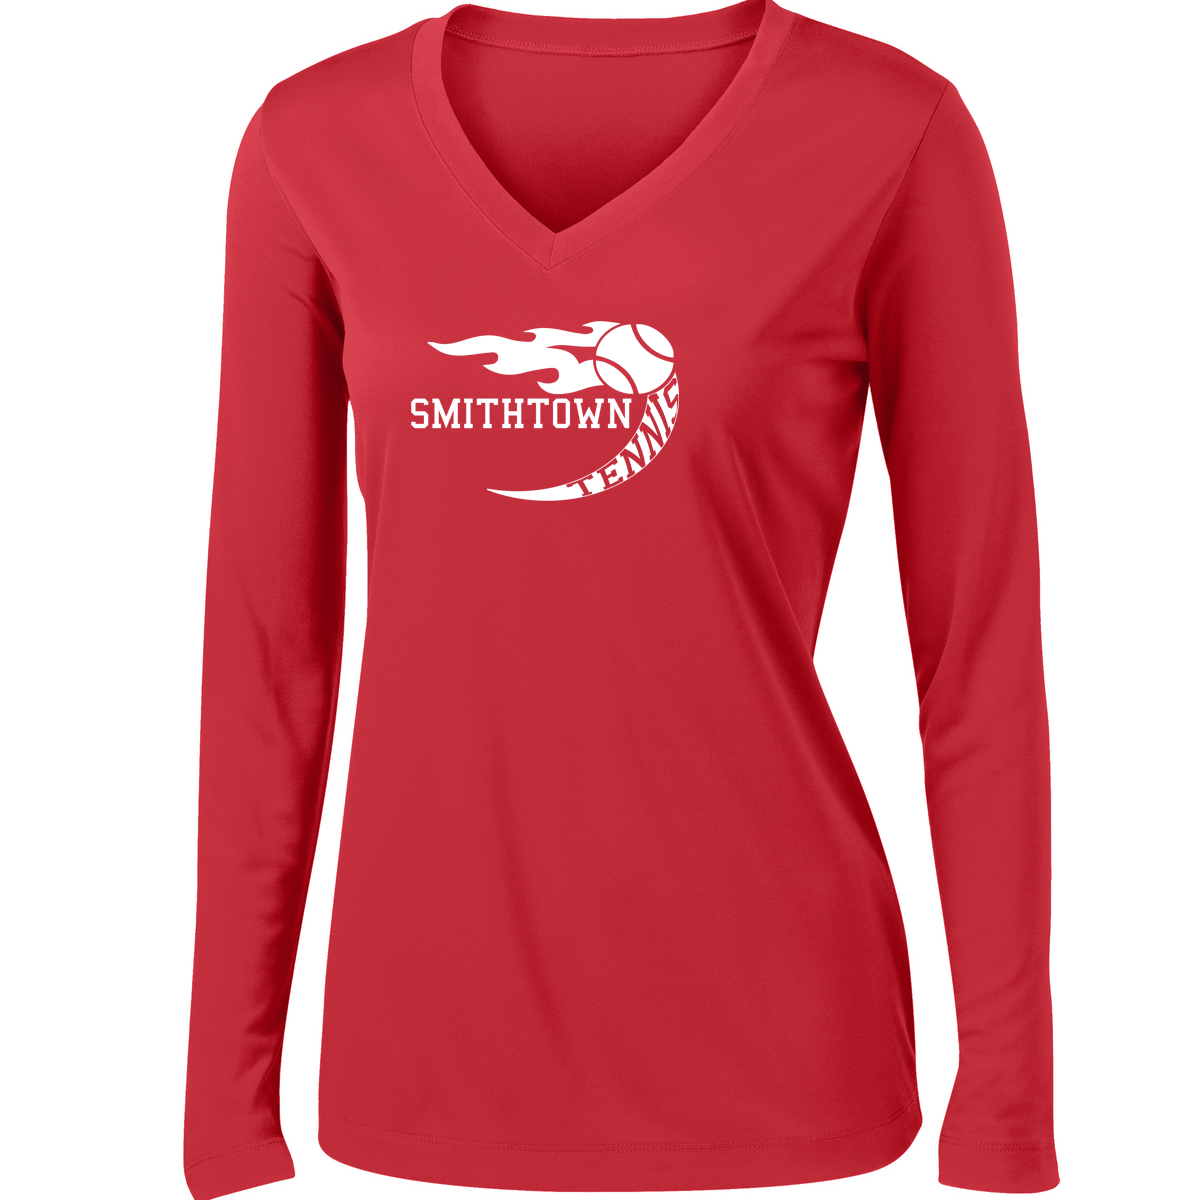 Smithtown Tennis Women's Long Sleeve Performance Shirt